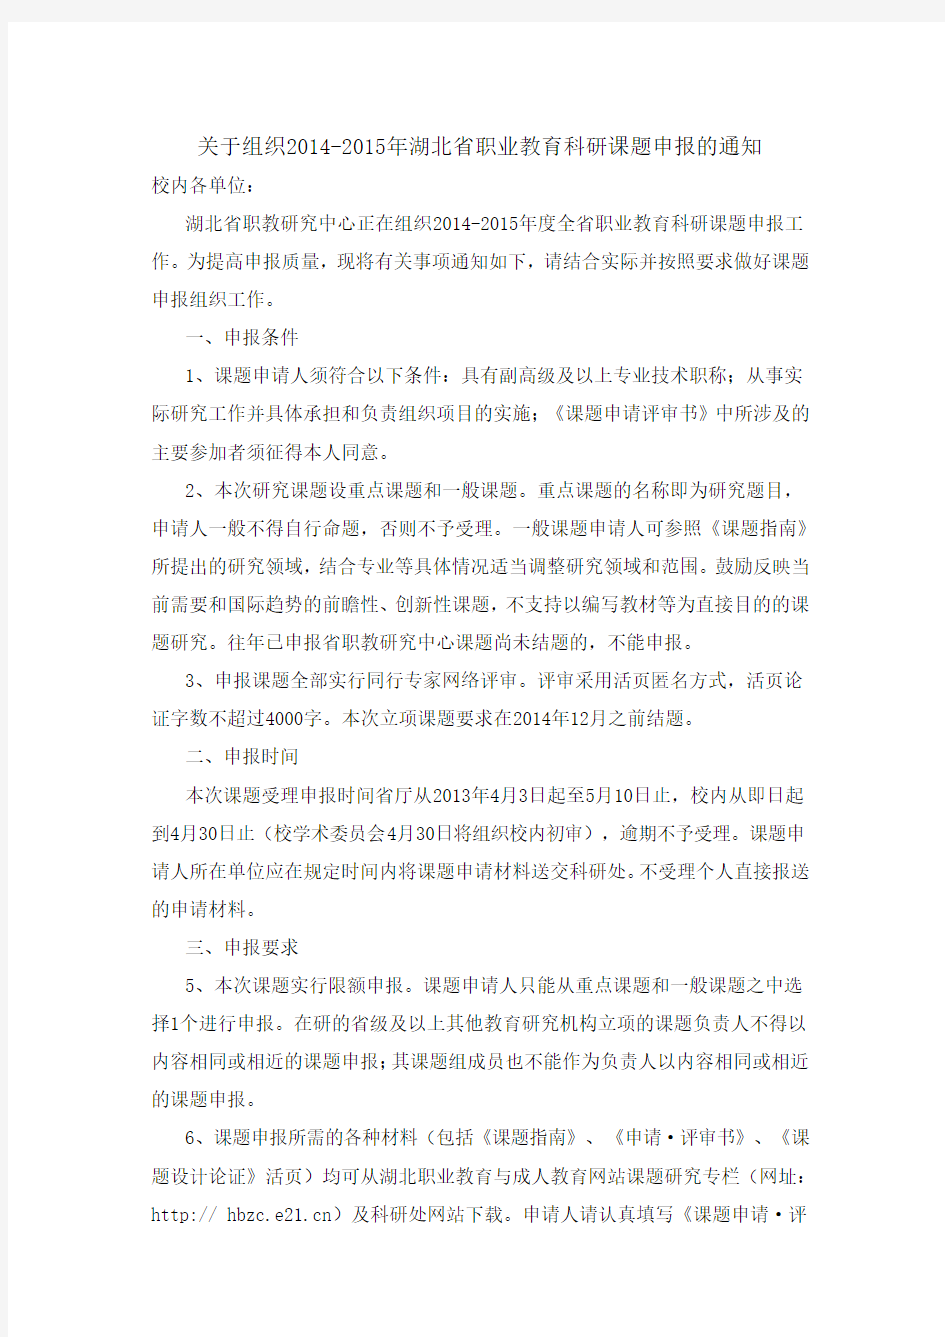 关于组织2014-2015年湖北省职业教育科研课题申报的通知